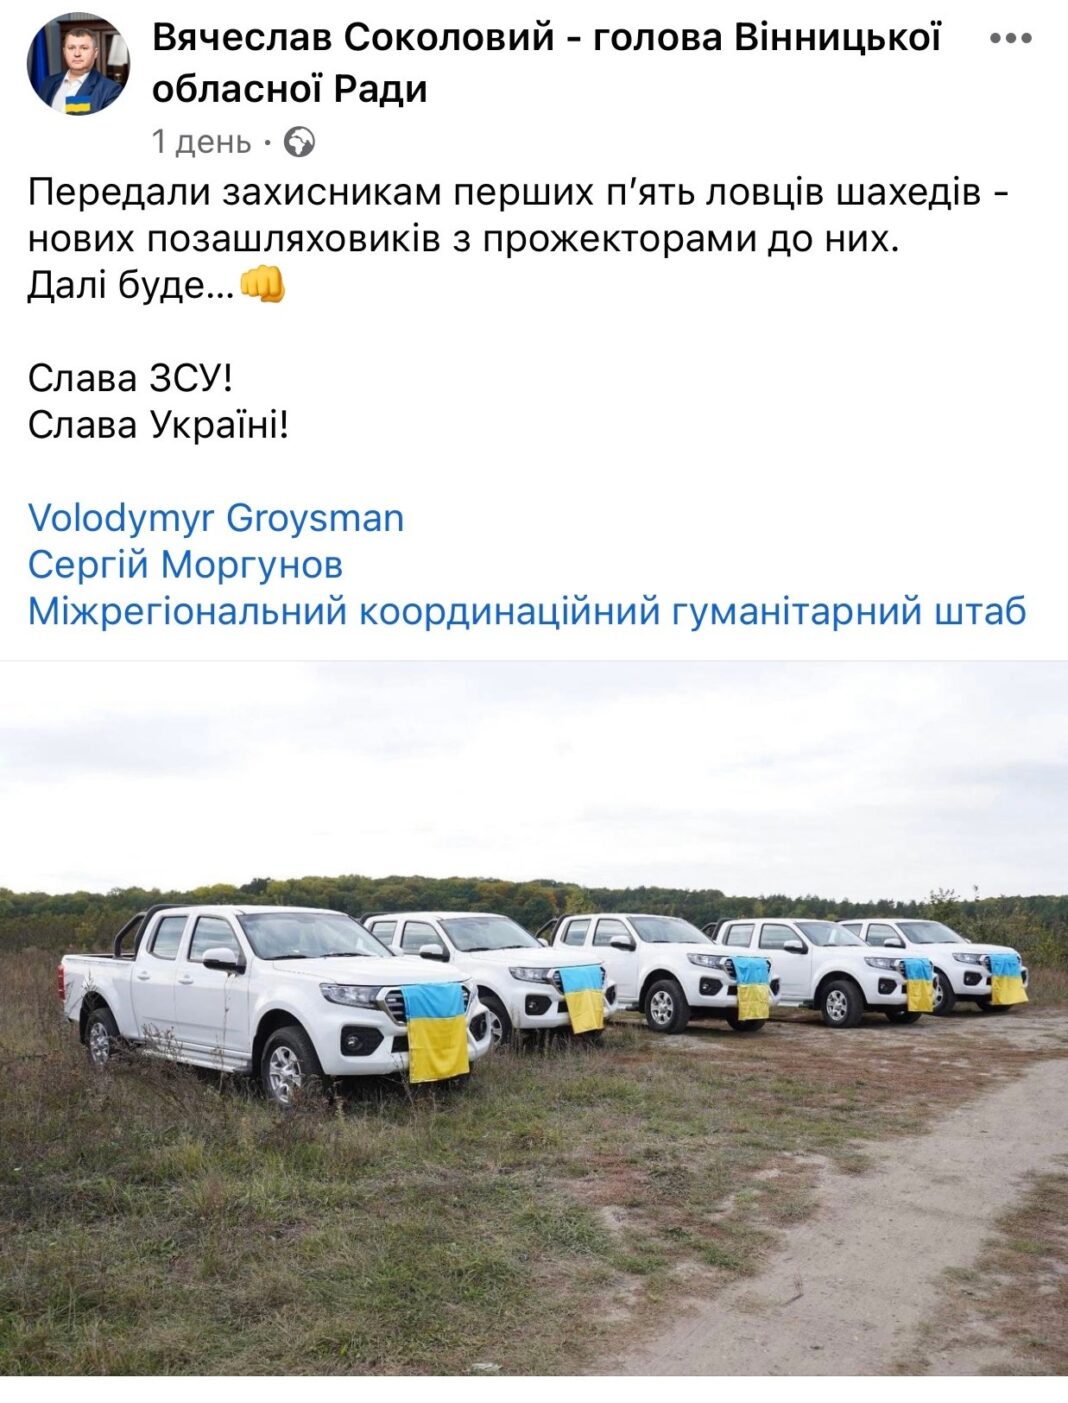 Колишнього мера Вінниці Володимира Гройсмана запідозрили в інформаційних маніпуляціях на тему допомоги захисникам України. 